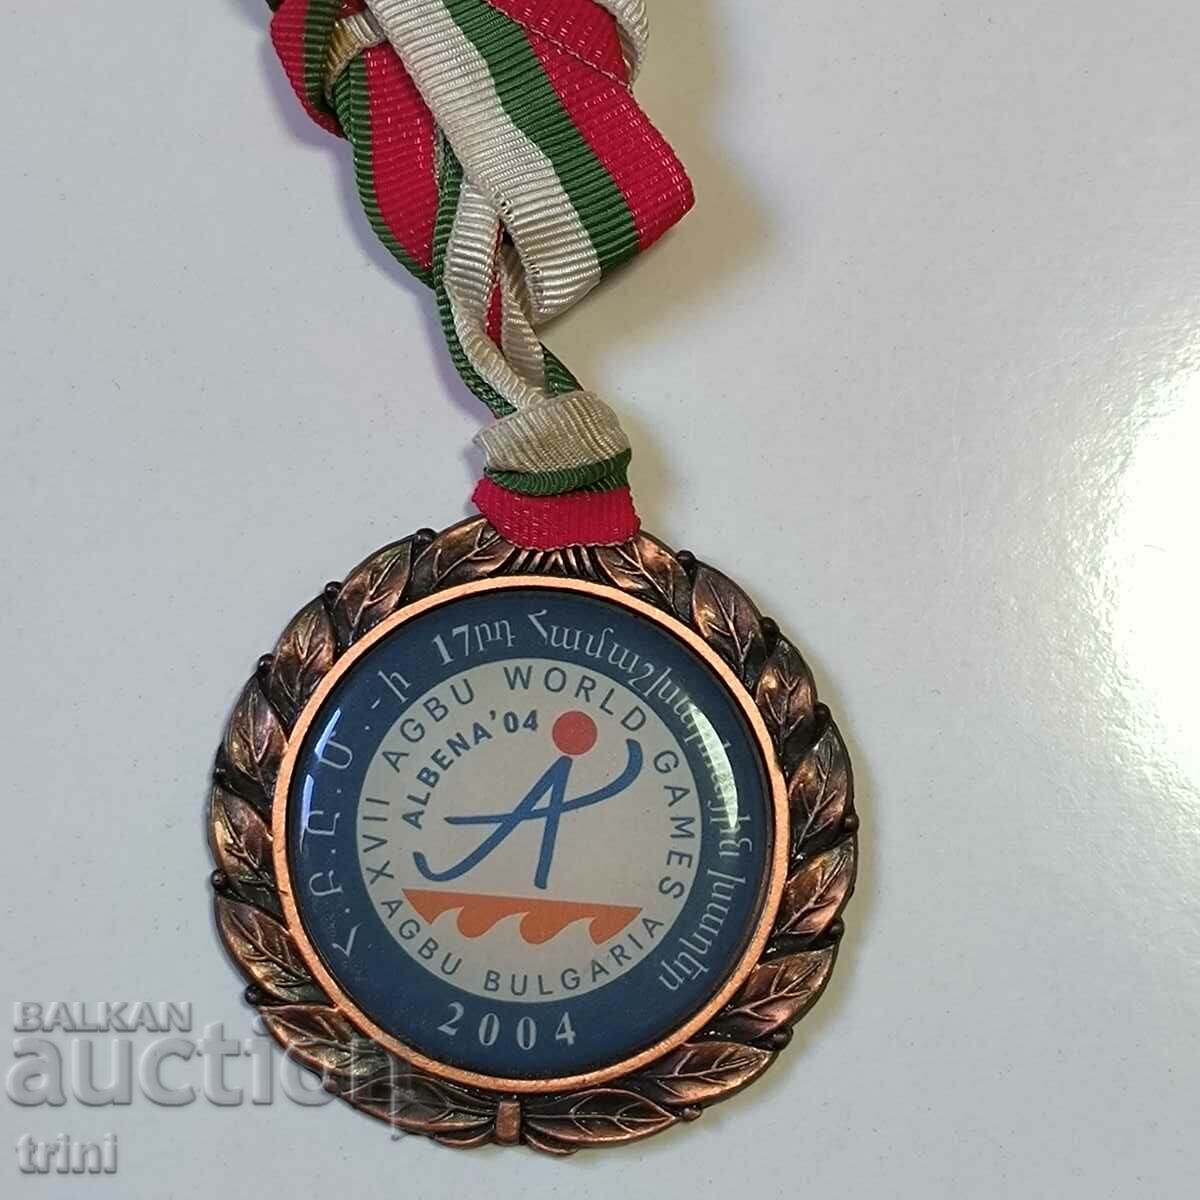 Χάλκινο μετάλλιο κολύμβησης ανδρών AGBU Παγκόσμιοι Αγώνες Βουλγαρίας